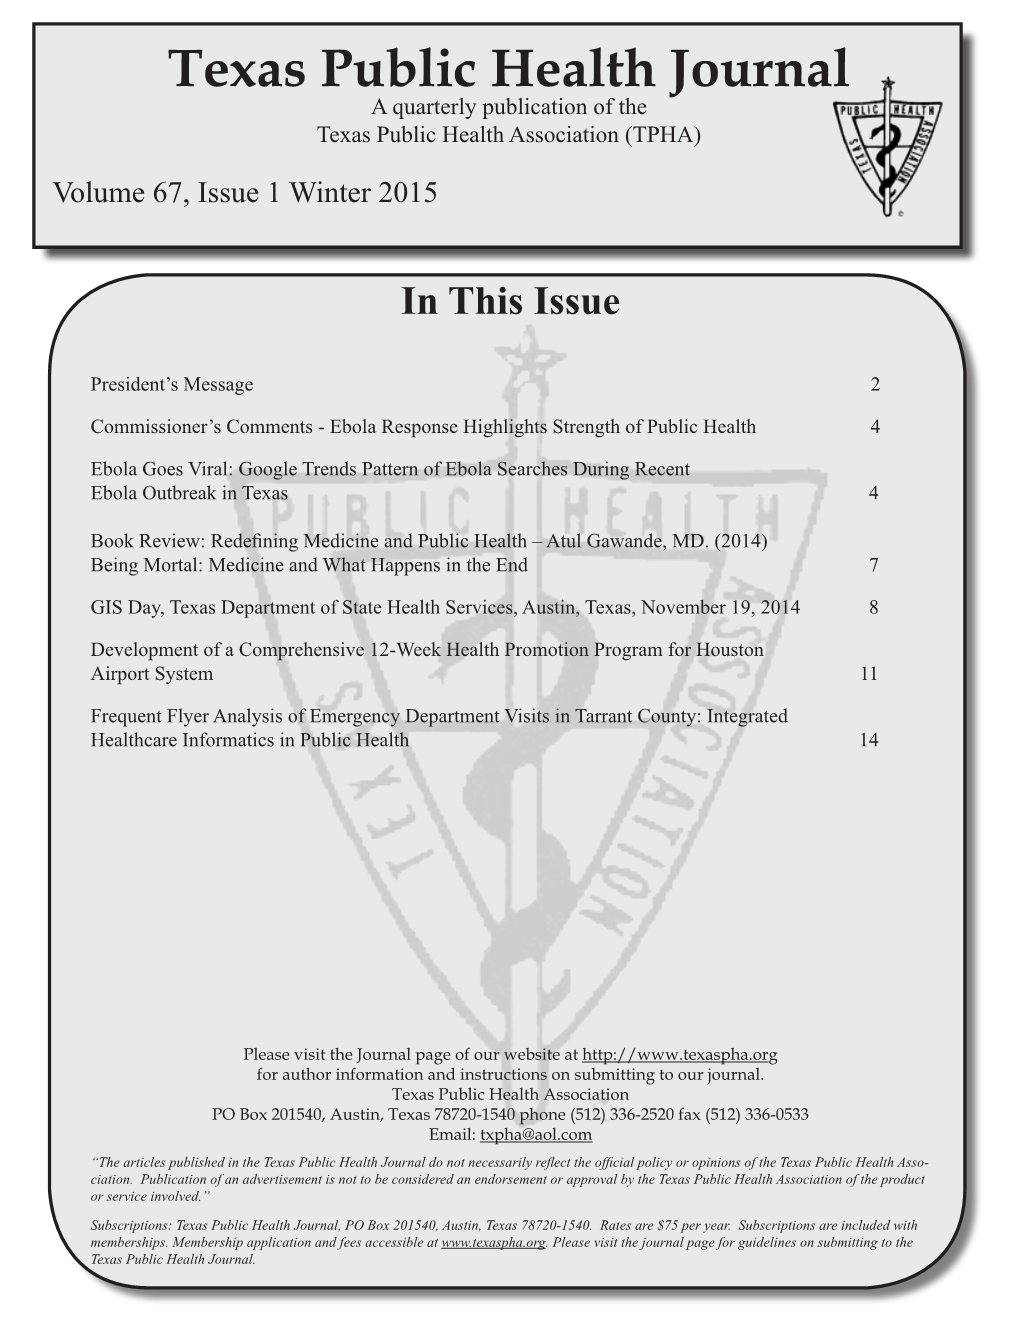 Texas Public Health Journal a Quarterly Publication of the Texas Public Health Association (TPHA)